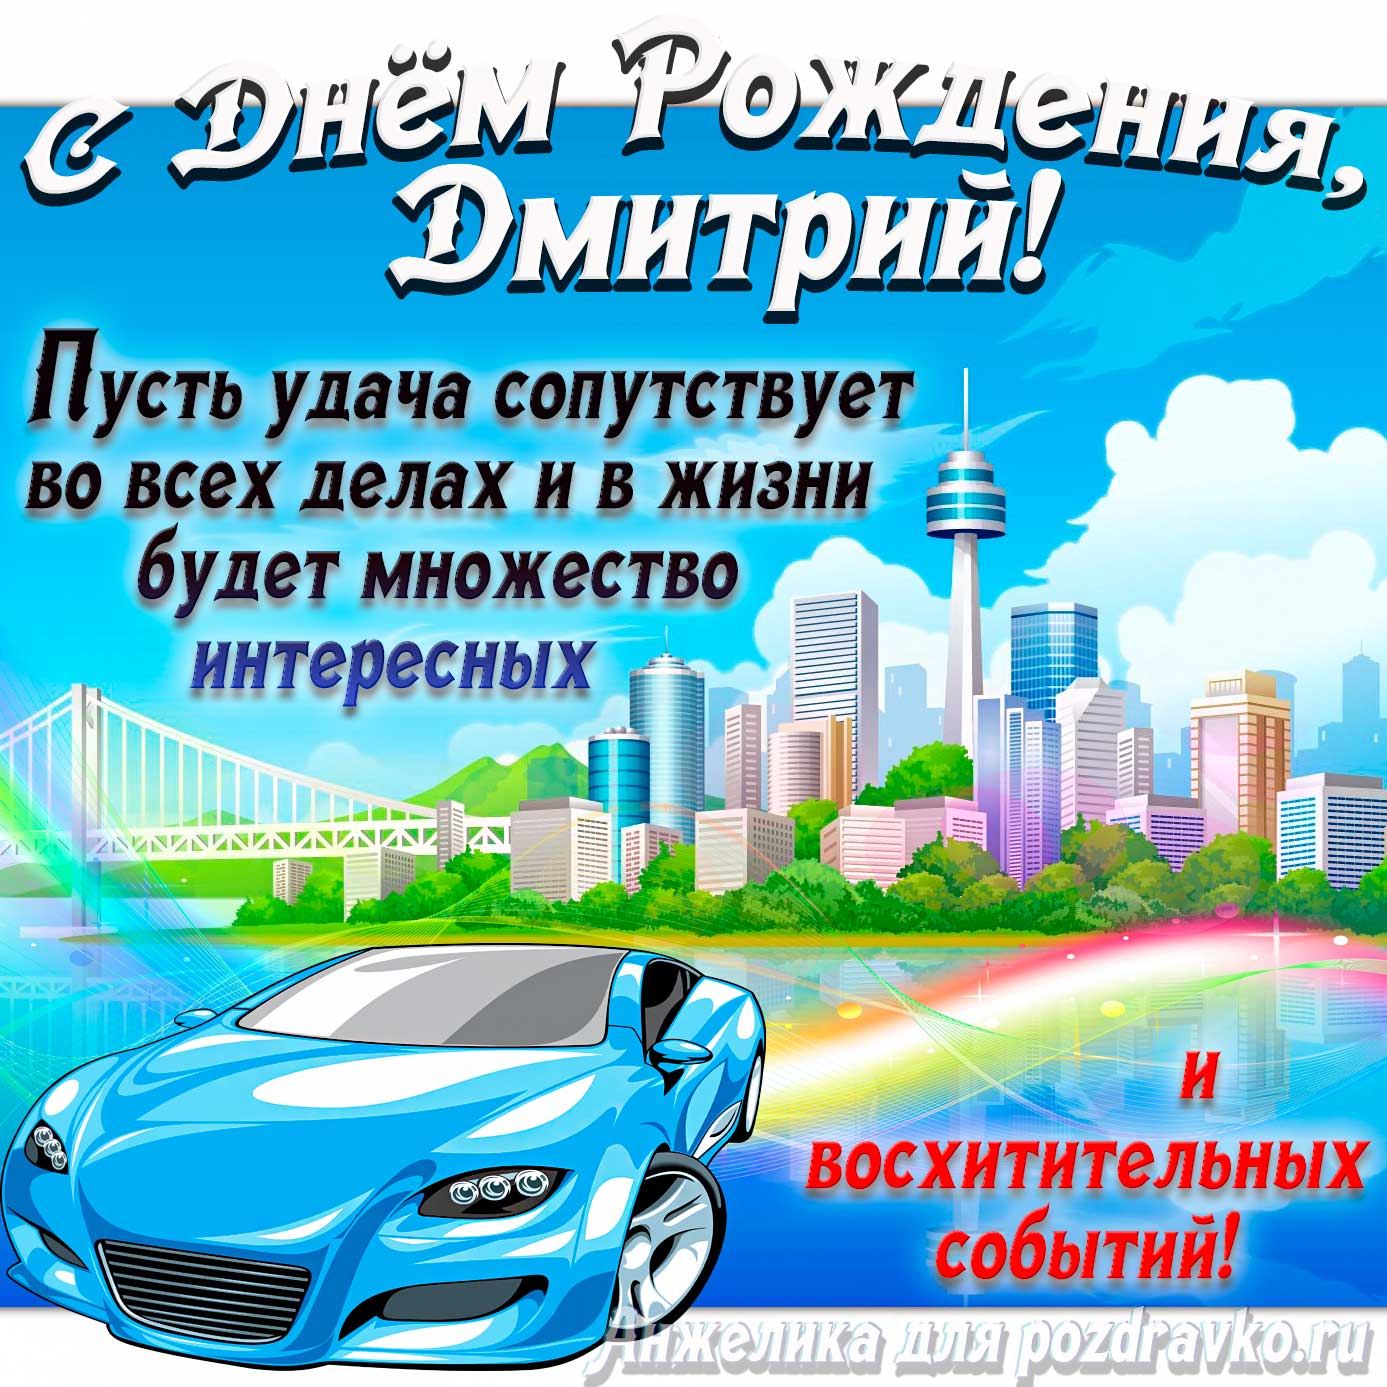 Открытка - с Днём Рождения Дмитрий с голубой машиной и пожеланием. Скачать бесплатно или отправить картинку.